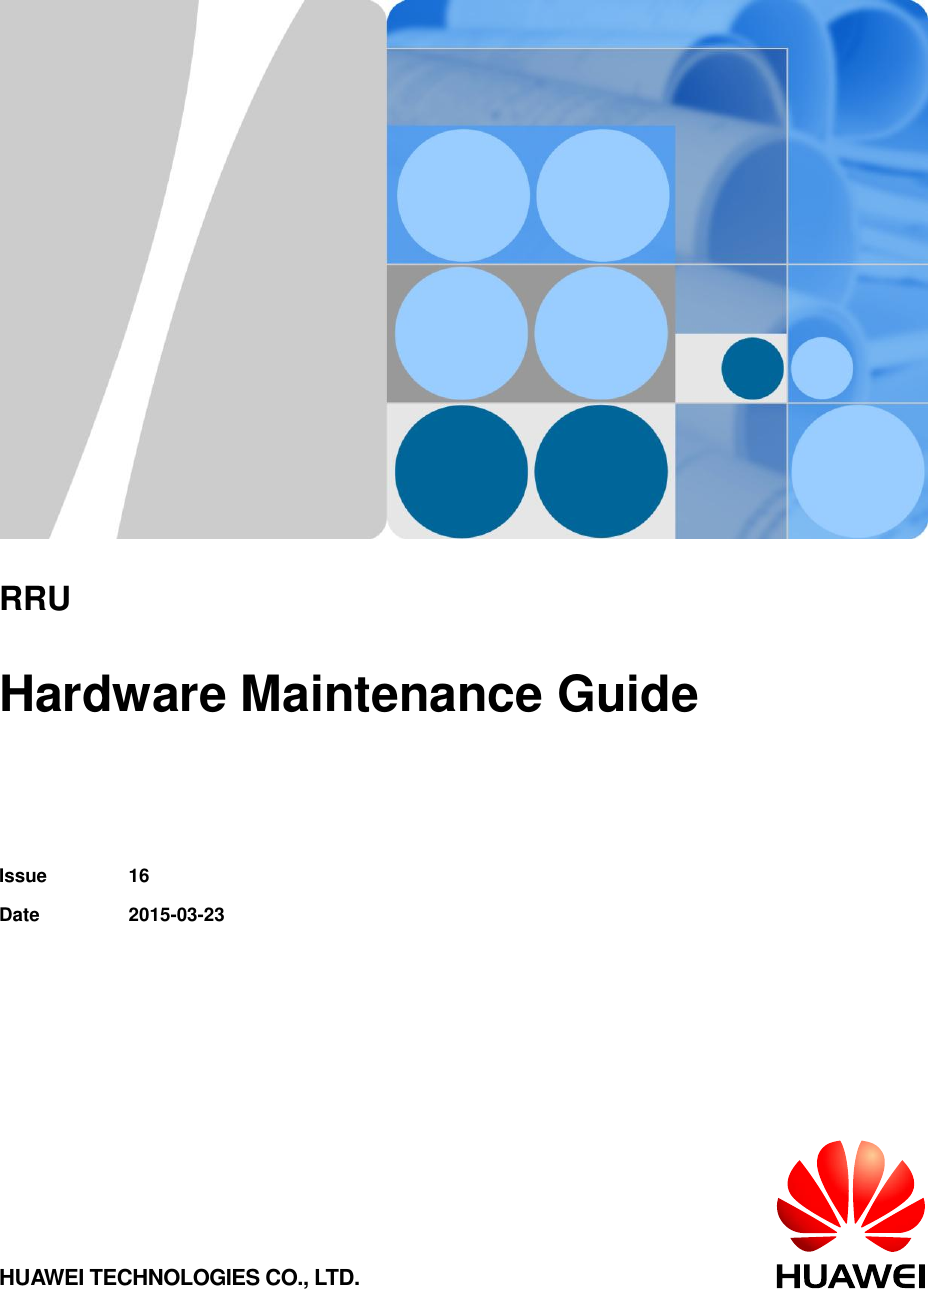           RRU  Hardware Maintenance Guide   Issue 16 Date 2015-03-23 HUAWEI TECHNOLOGIES CO., LTD. 